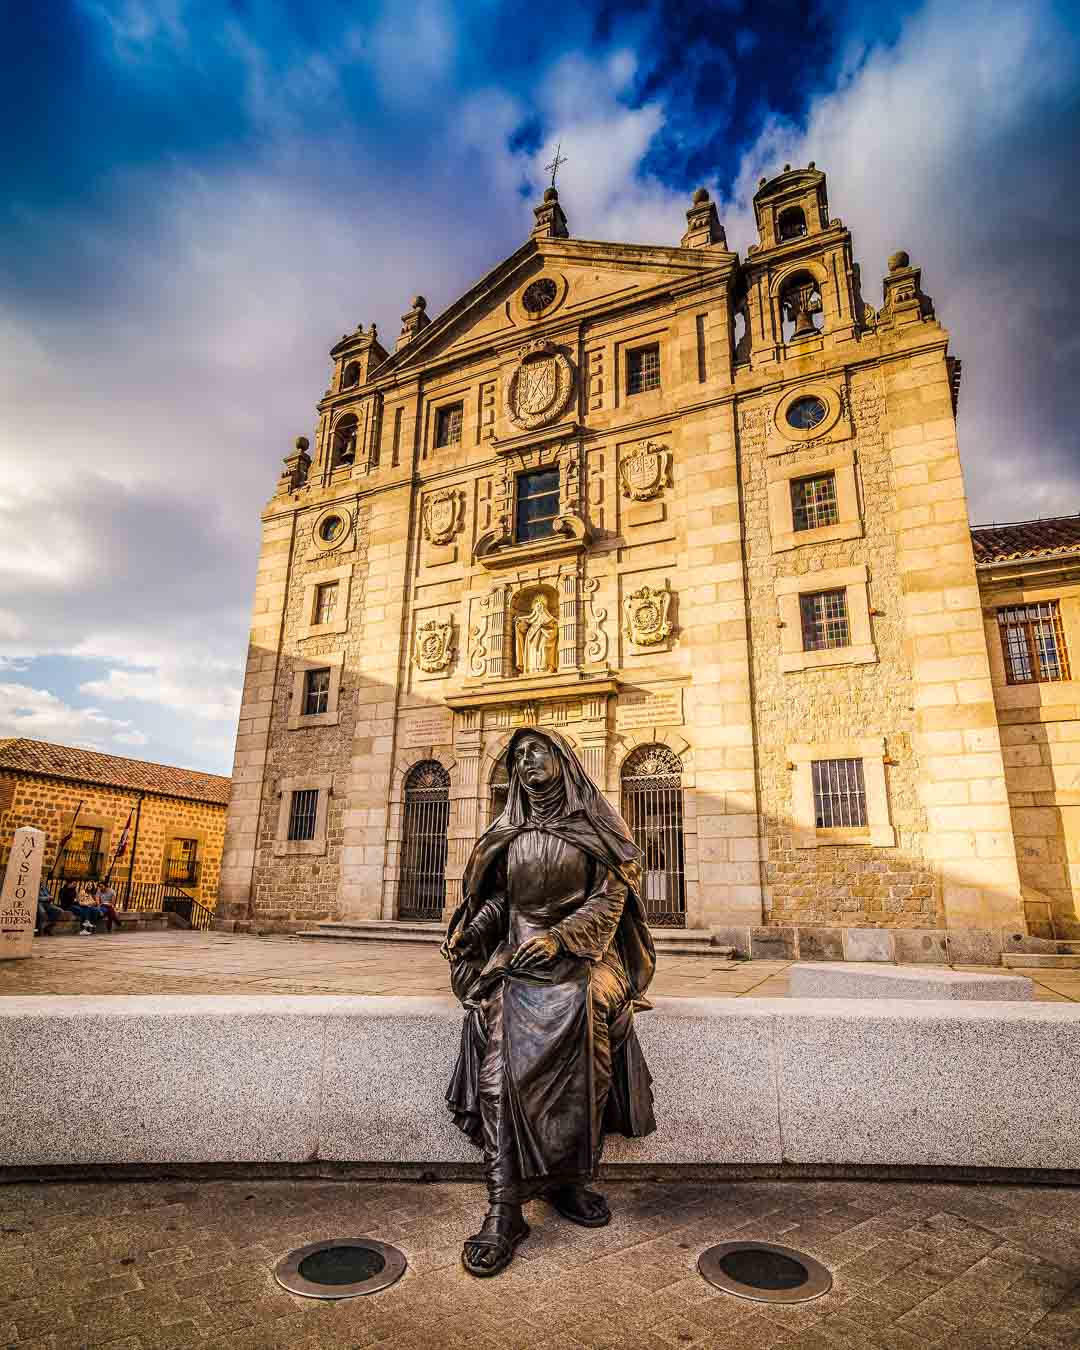 iglesia santa teresa and statue of santa teresa